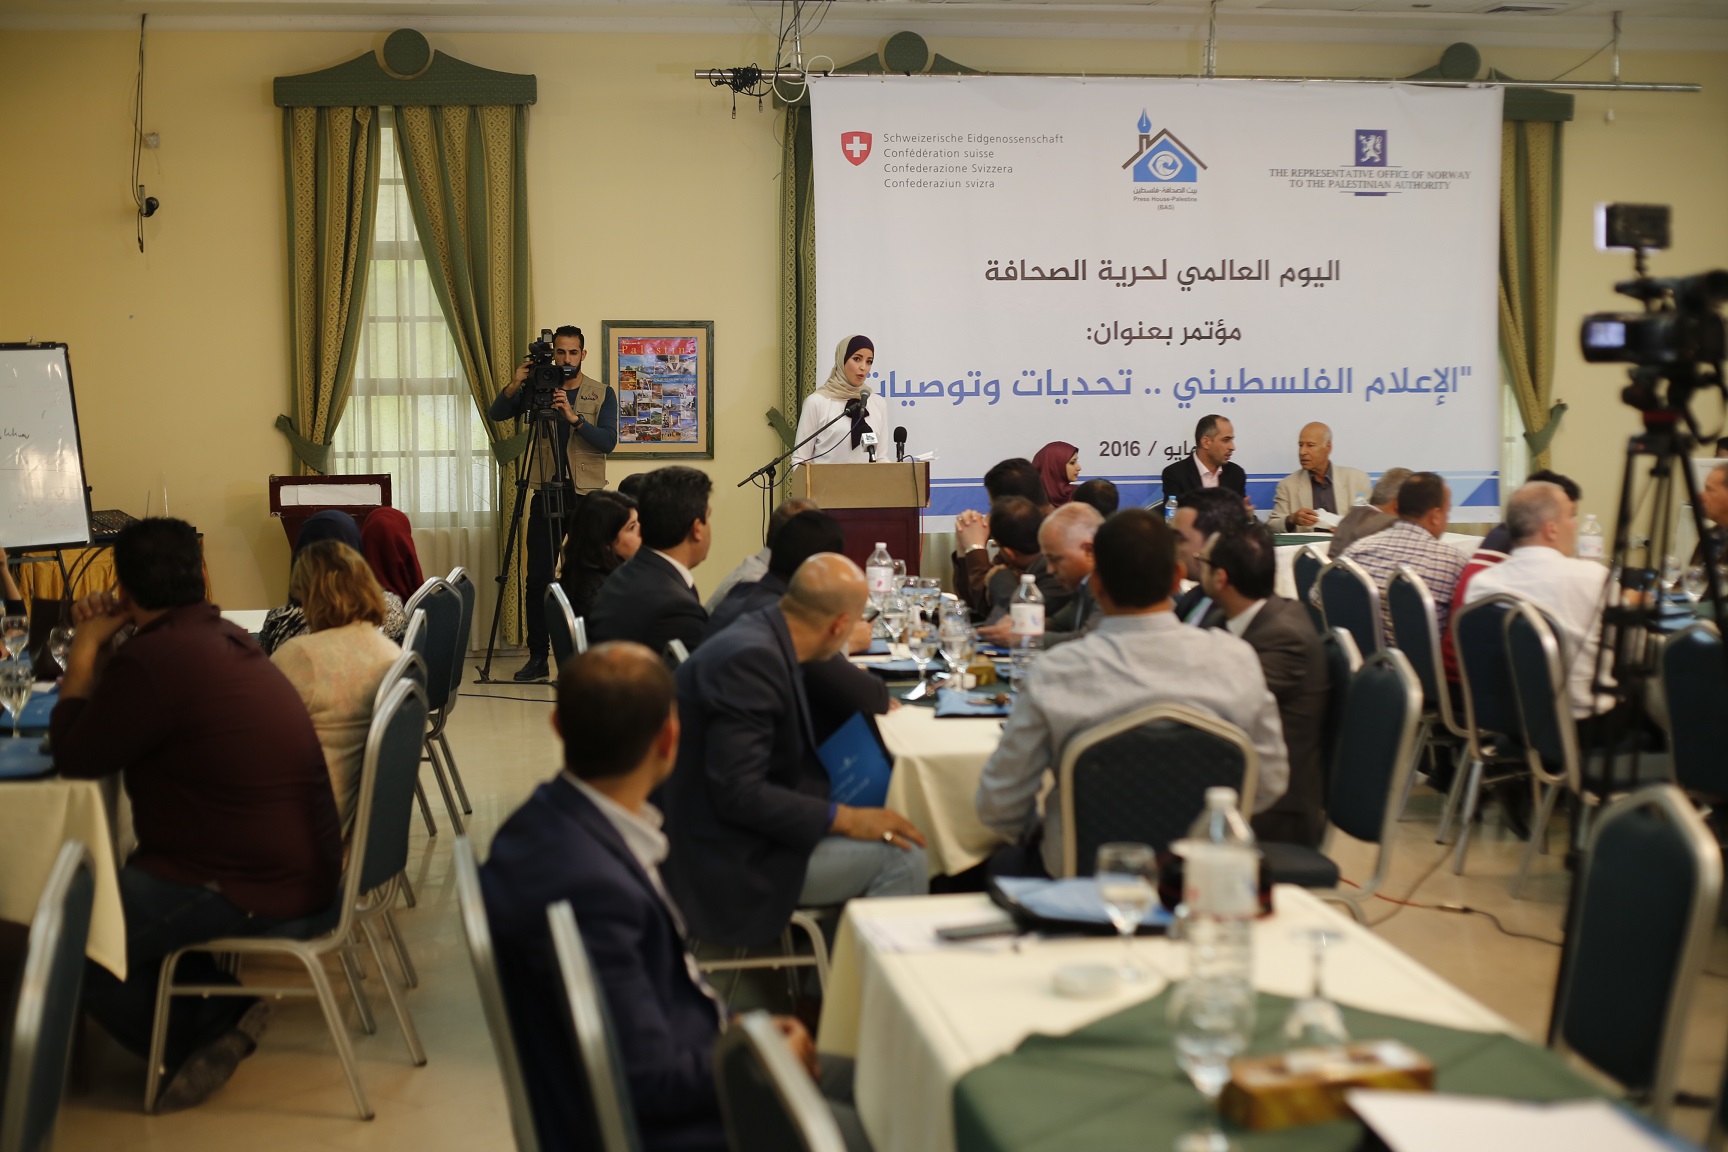 شاهد الصور: بيت الصحافة تعقد مؤتمراً بعنوان ' الاعلام الفلسطيني .. تحديات وتوصيات'